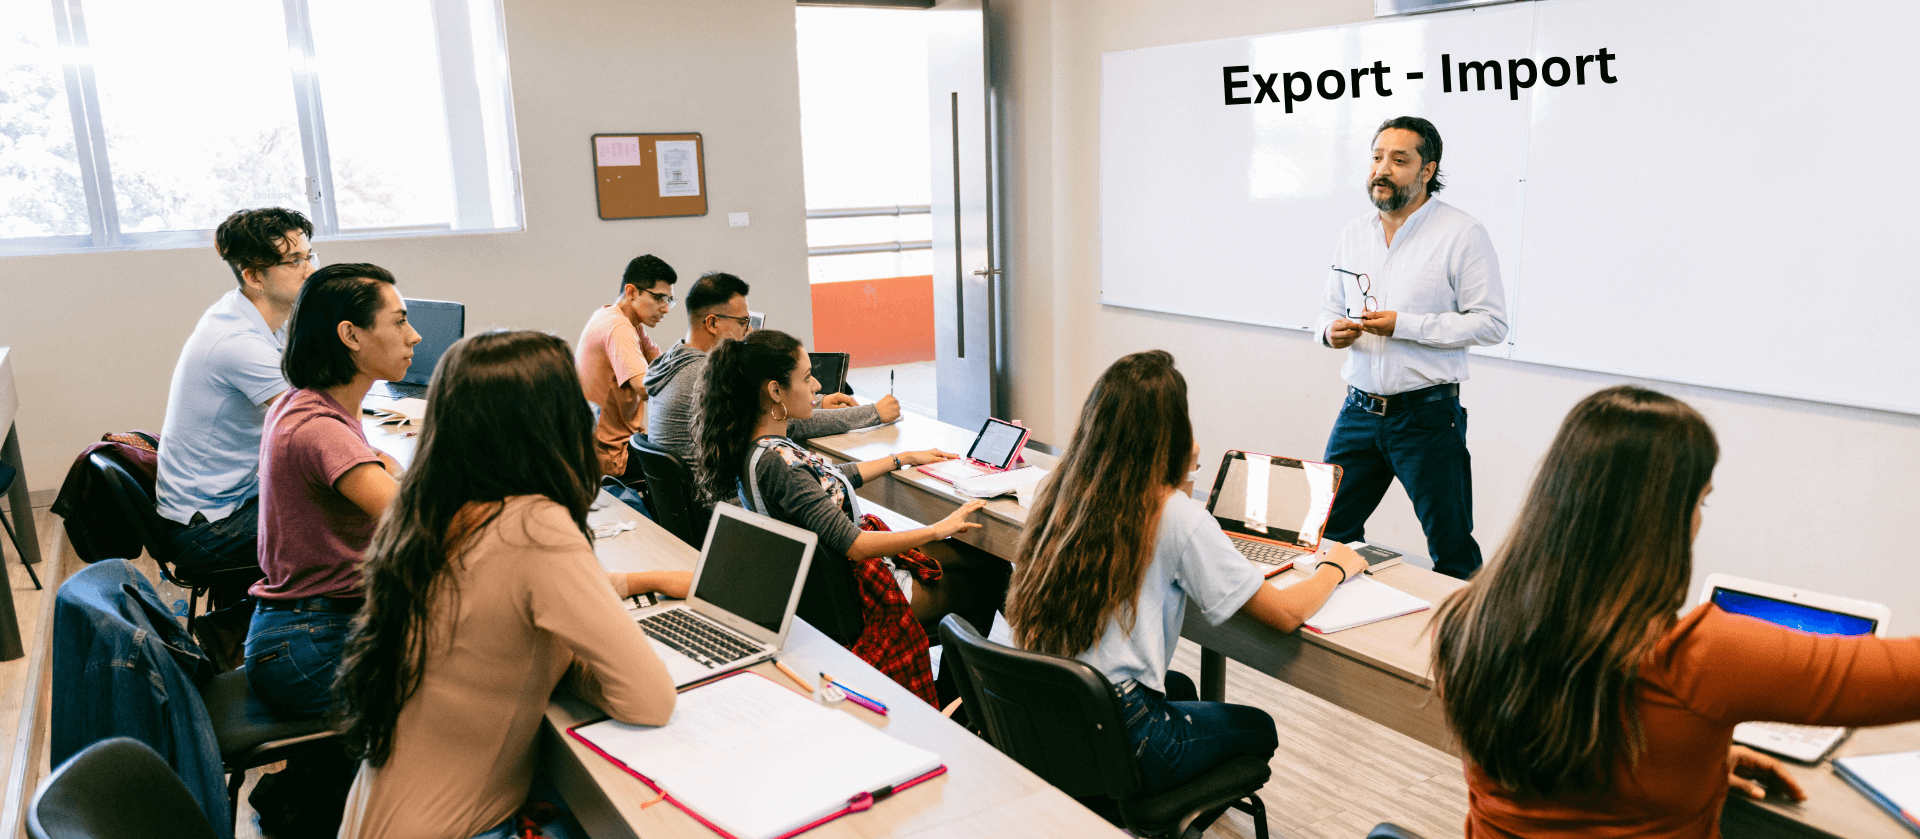 Offline Export Import Classes in Surat - RVC Export Import Training Institute